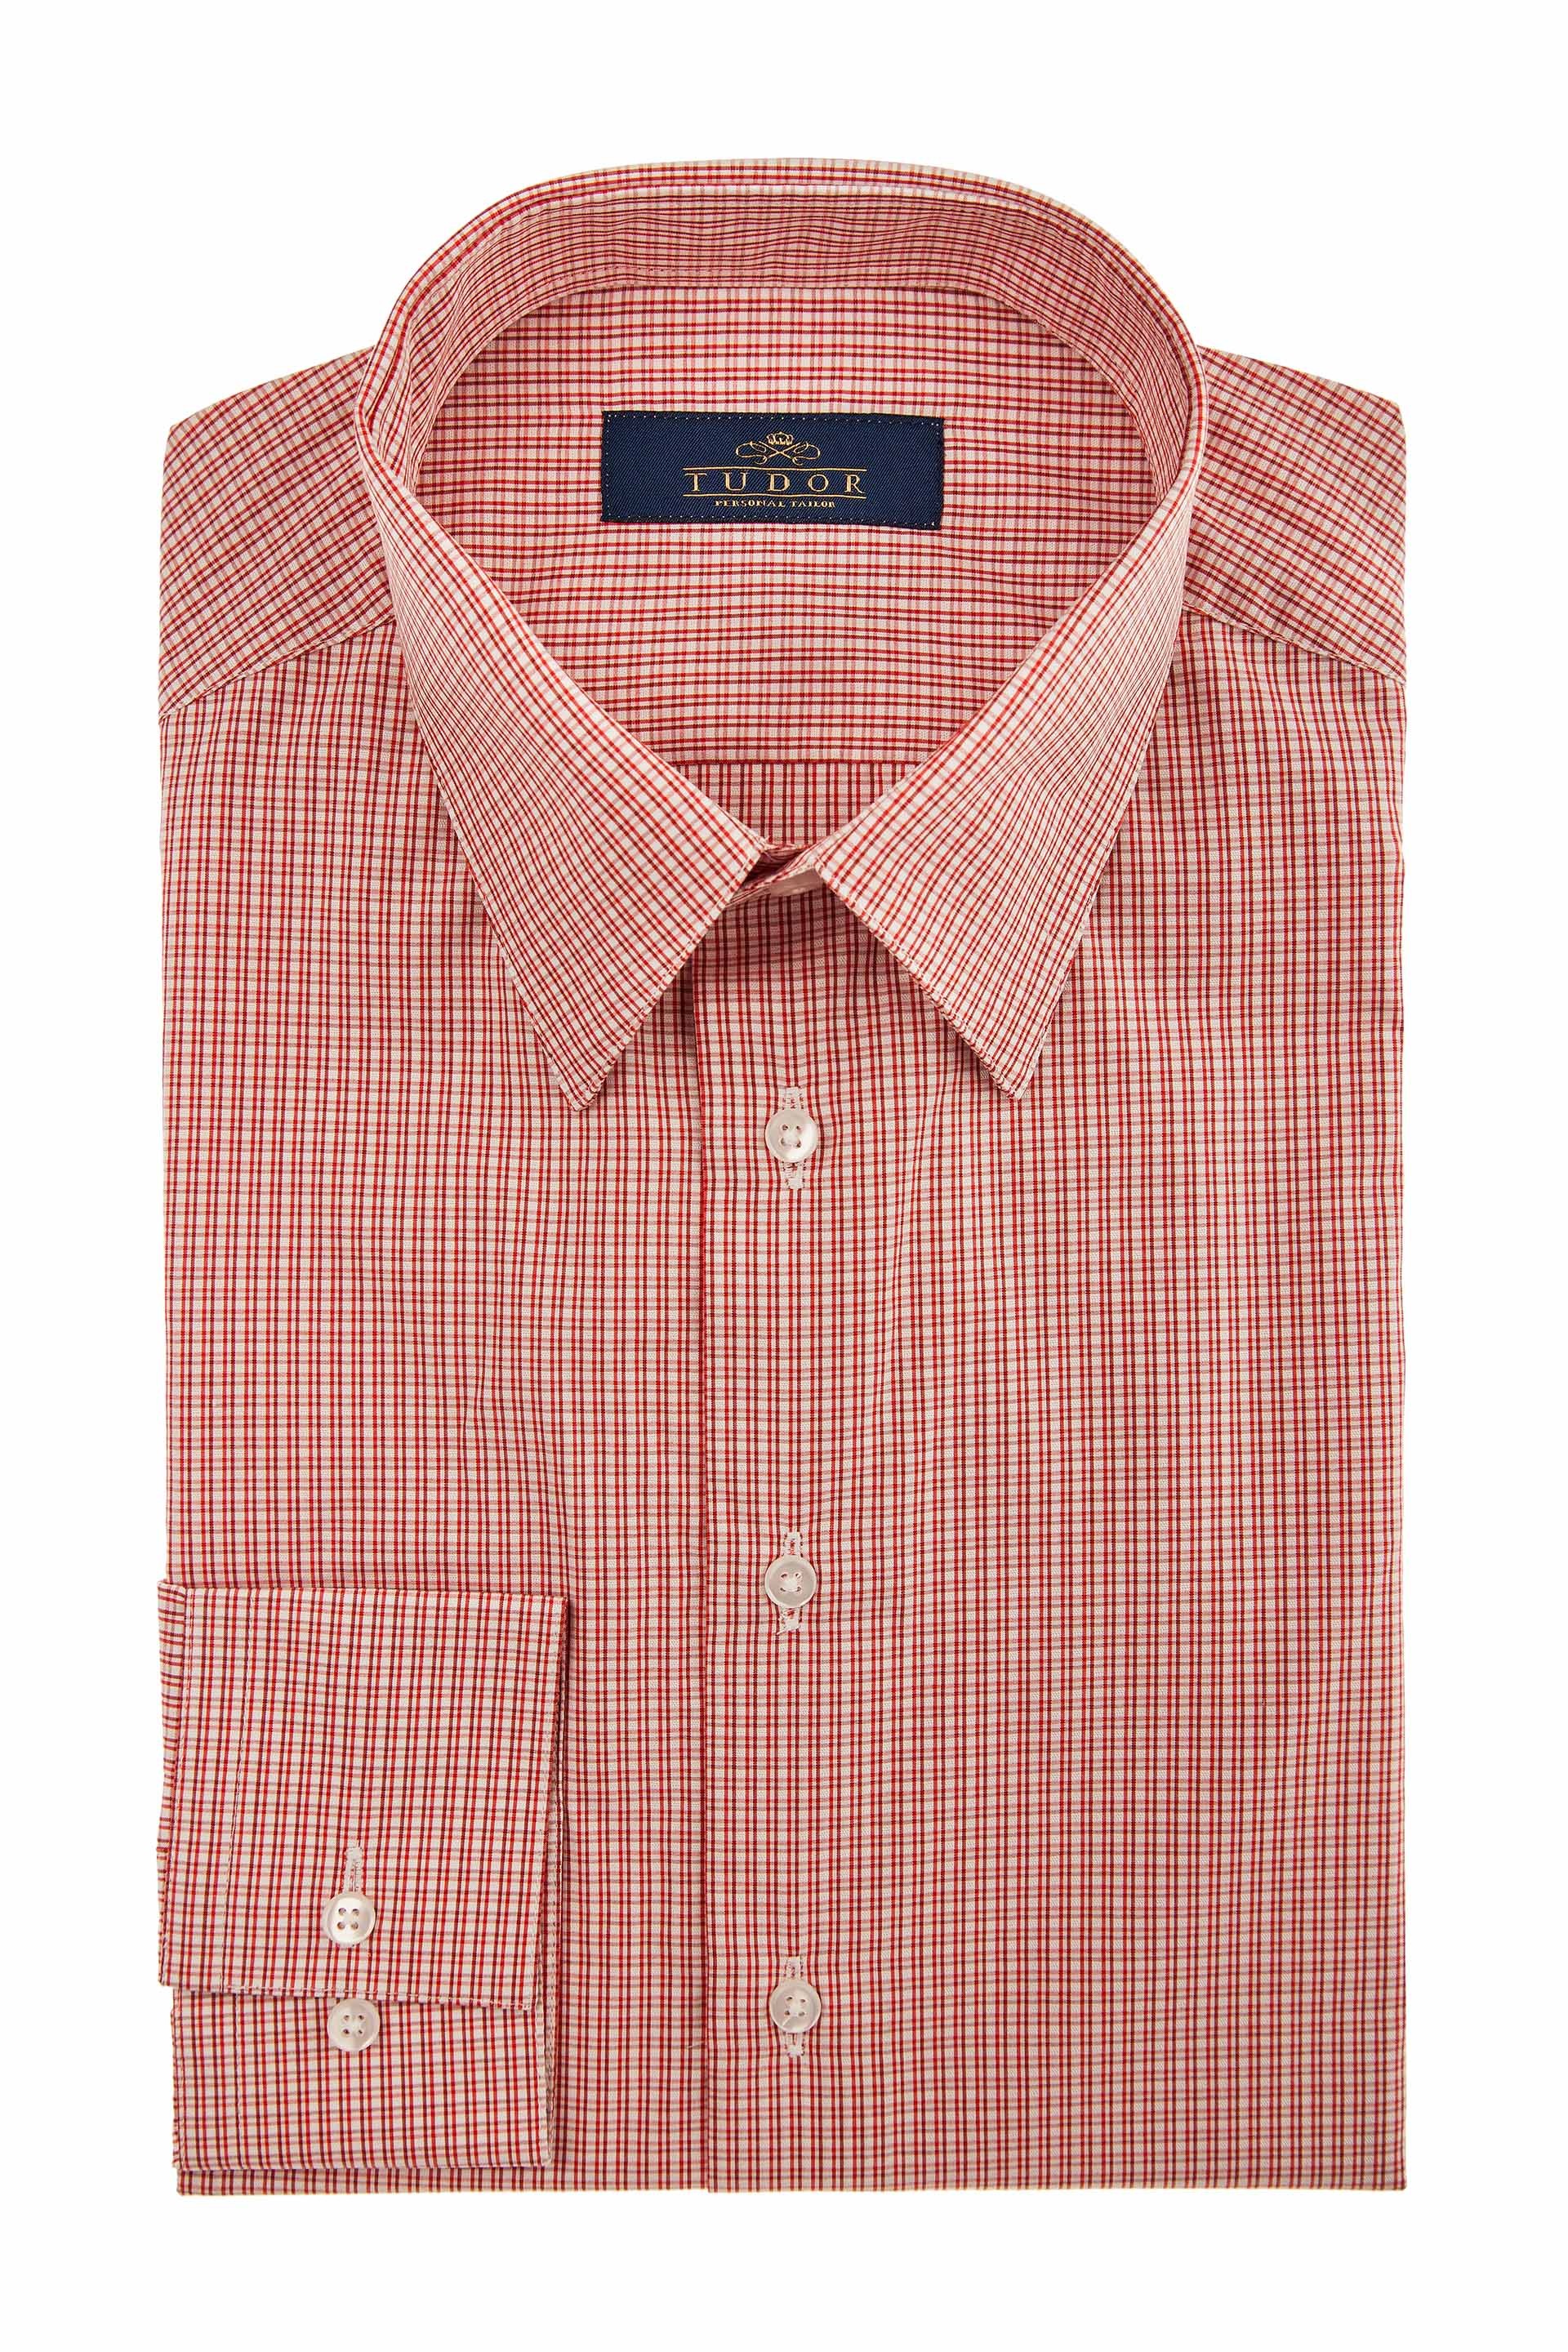 Elegant Men's Shirts - Cotton Shirt - Tudor Tailor